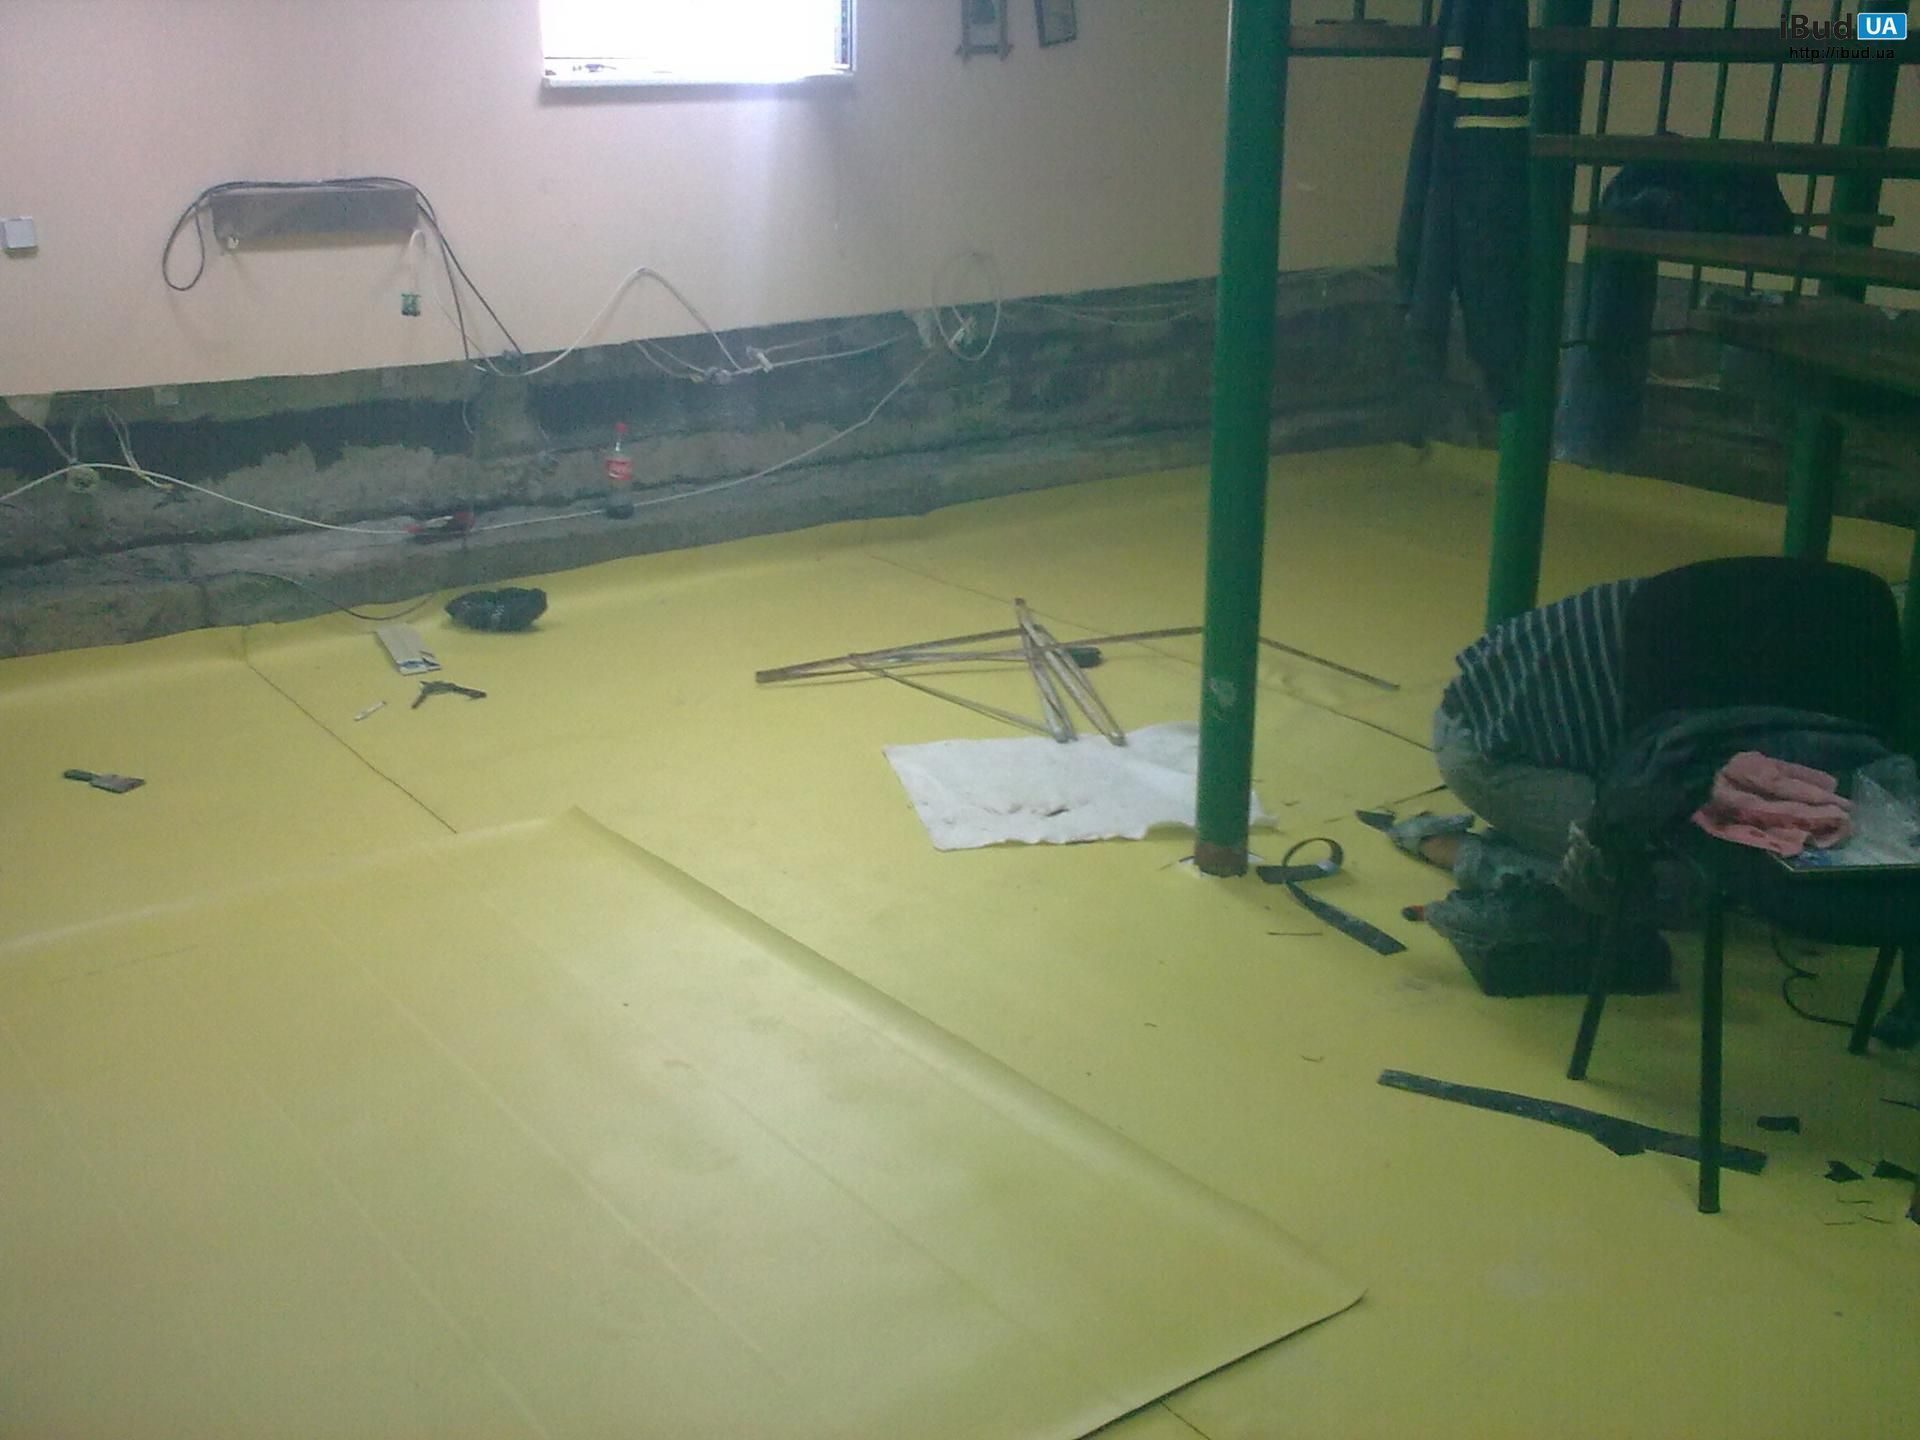 гідроізоляція підлоги 100 м/2 пвх мембраною урдін 1,5 мм